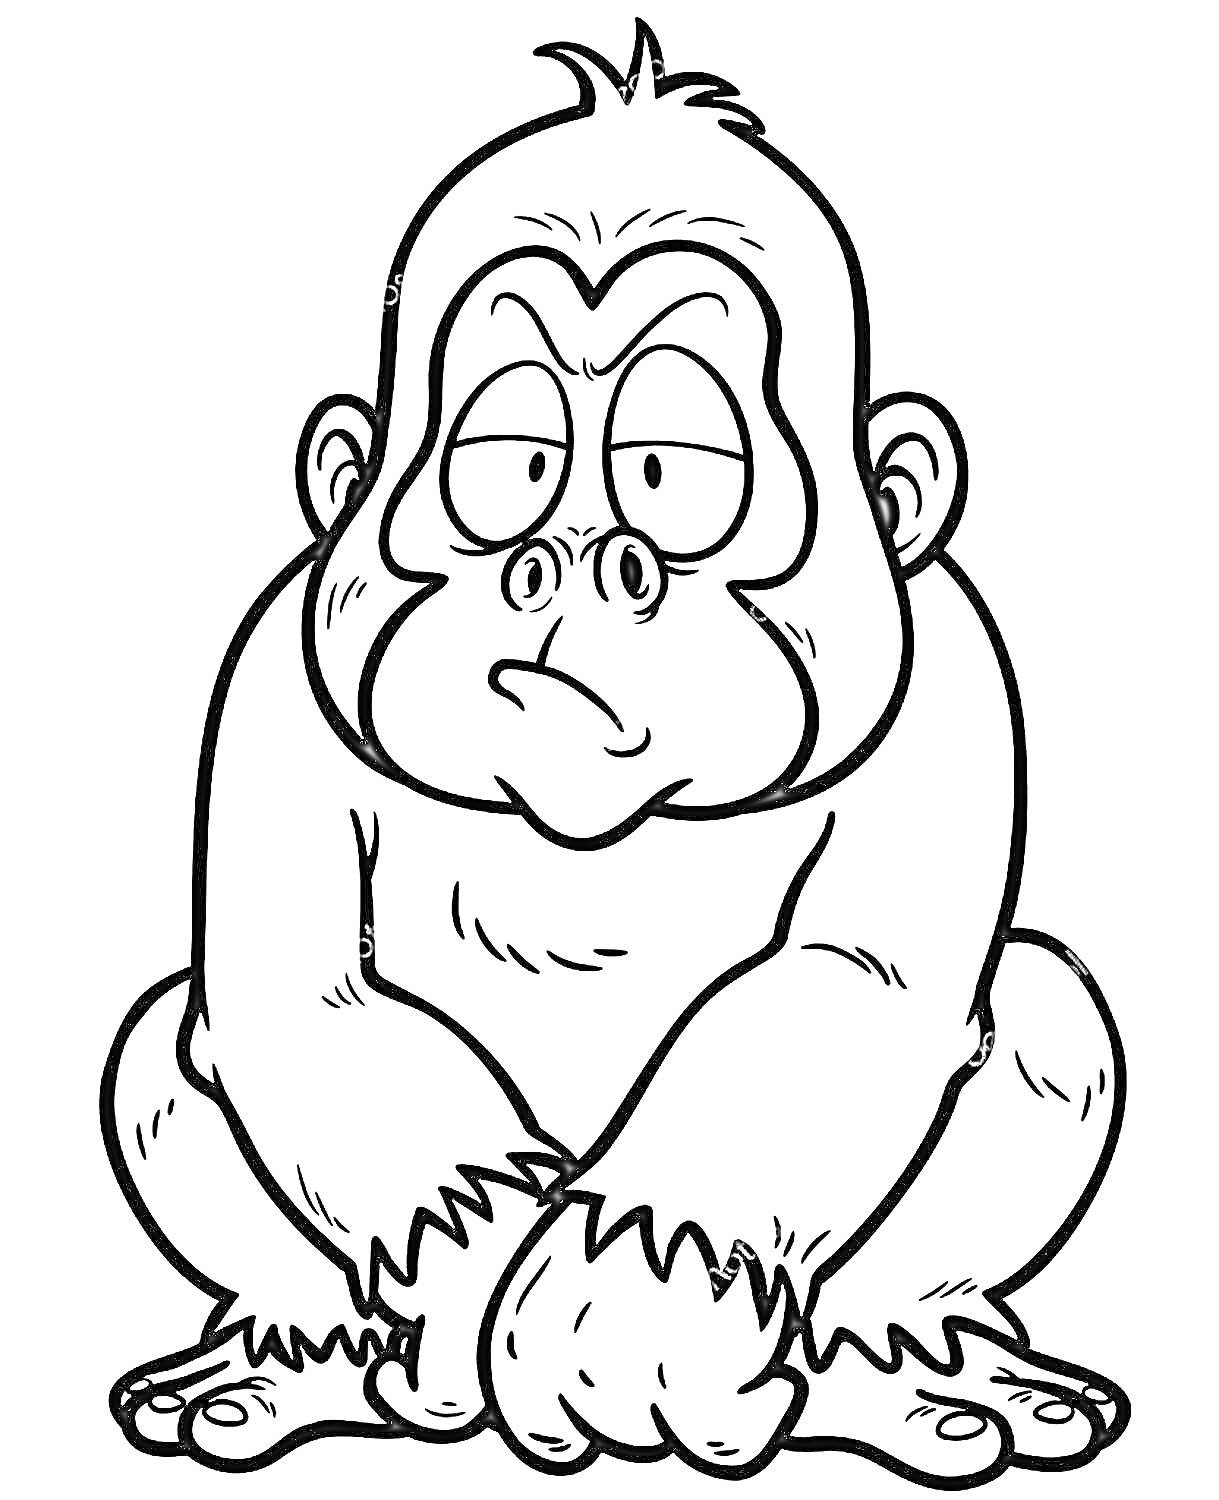 Грустная горилла с выражением усталости и задумчивости, сидящая на корточках